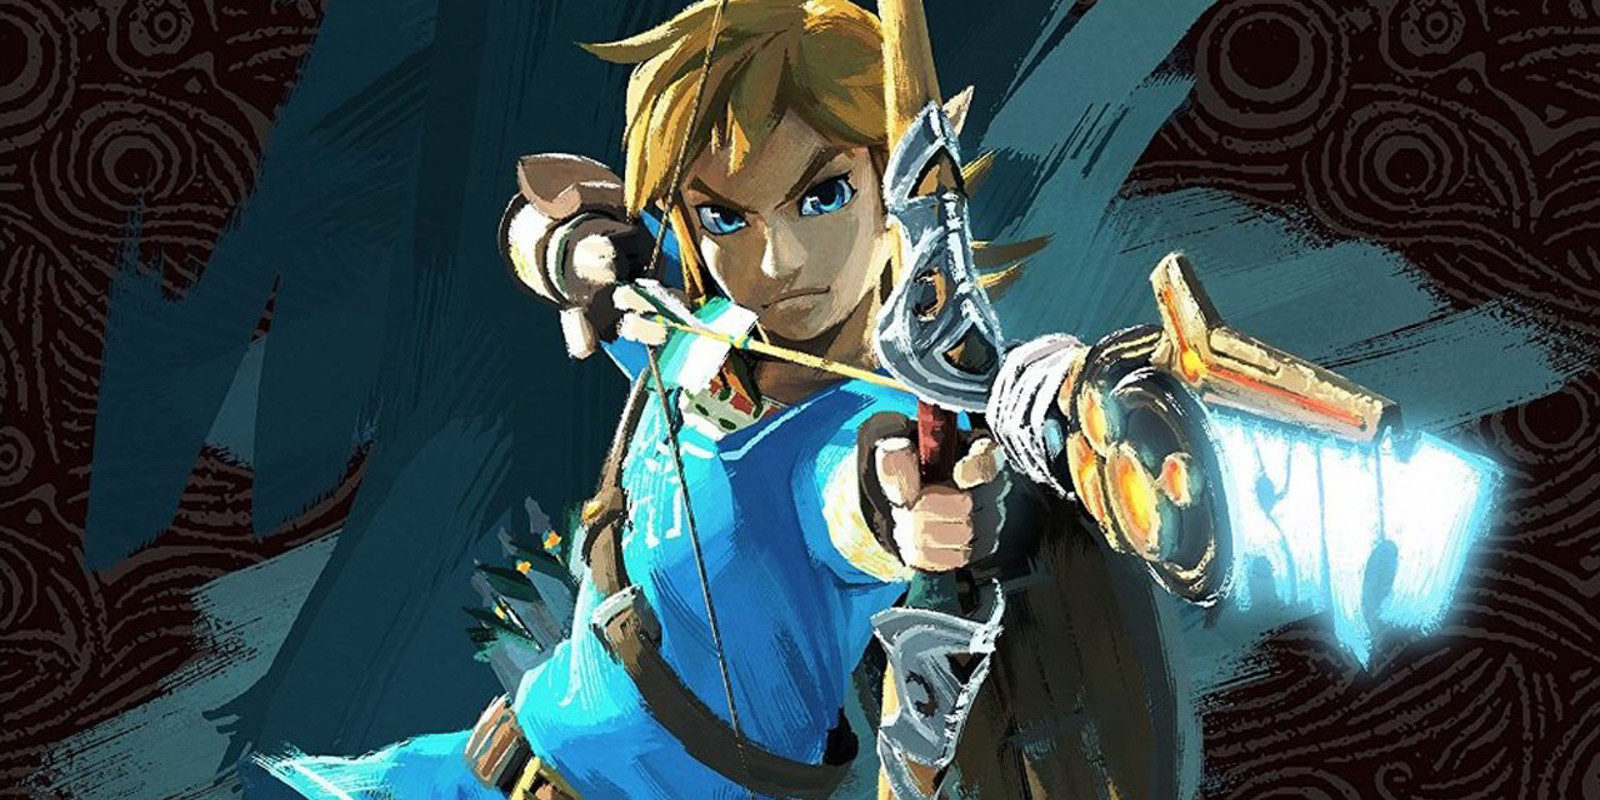 Confirmado: 'Zelda: Breath of The Wild' será juego de lanzamiento de Nintendo Switch